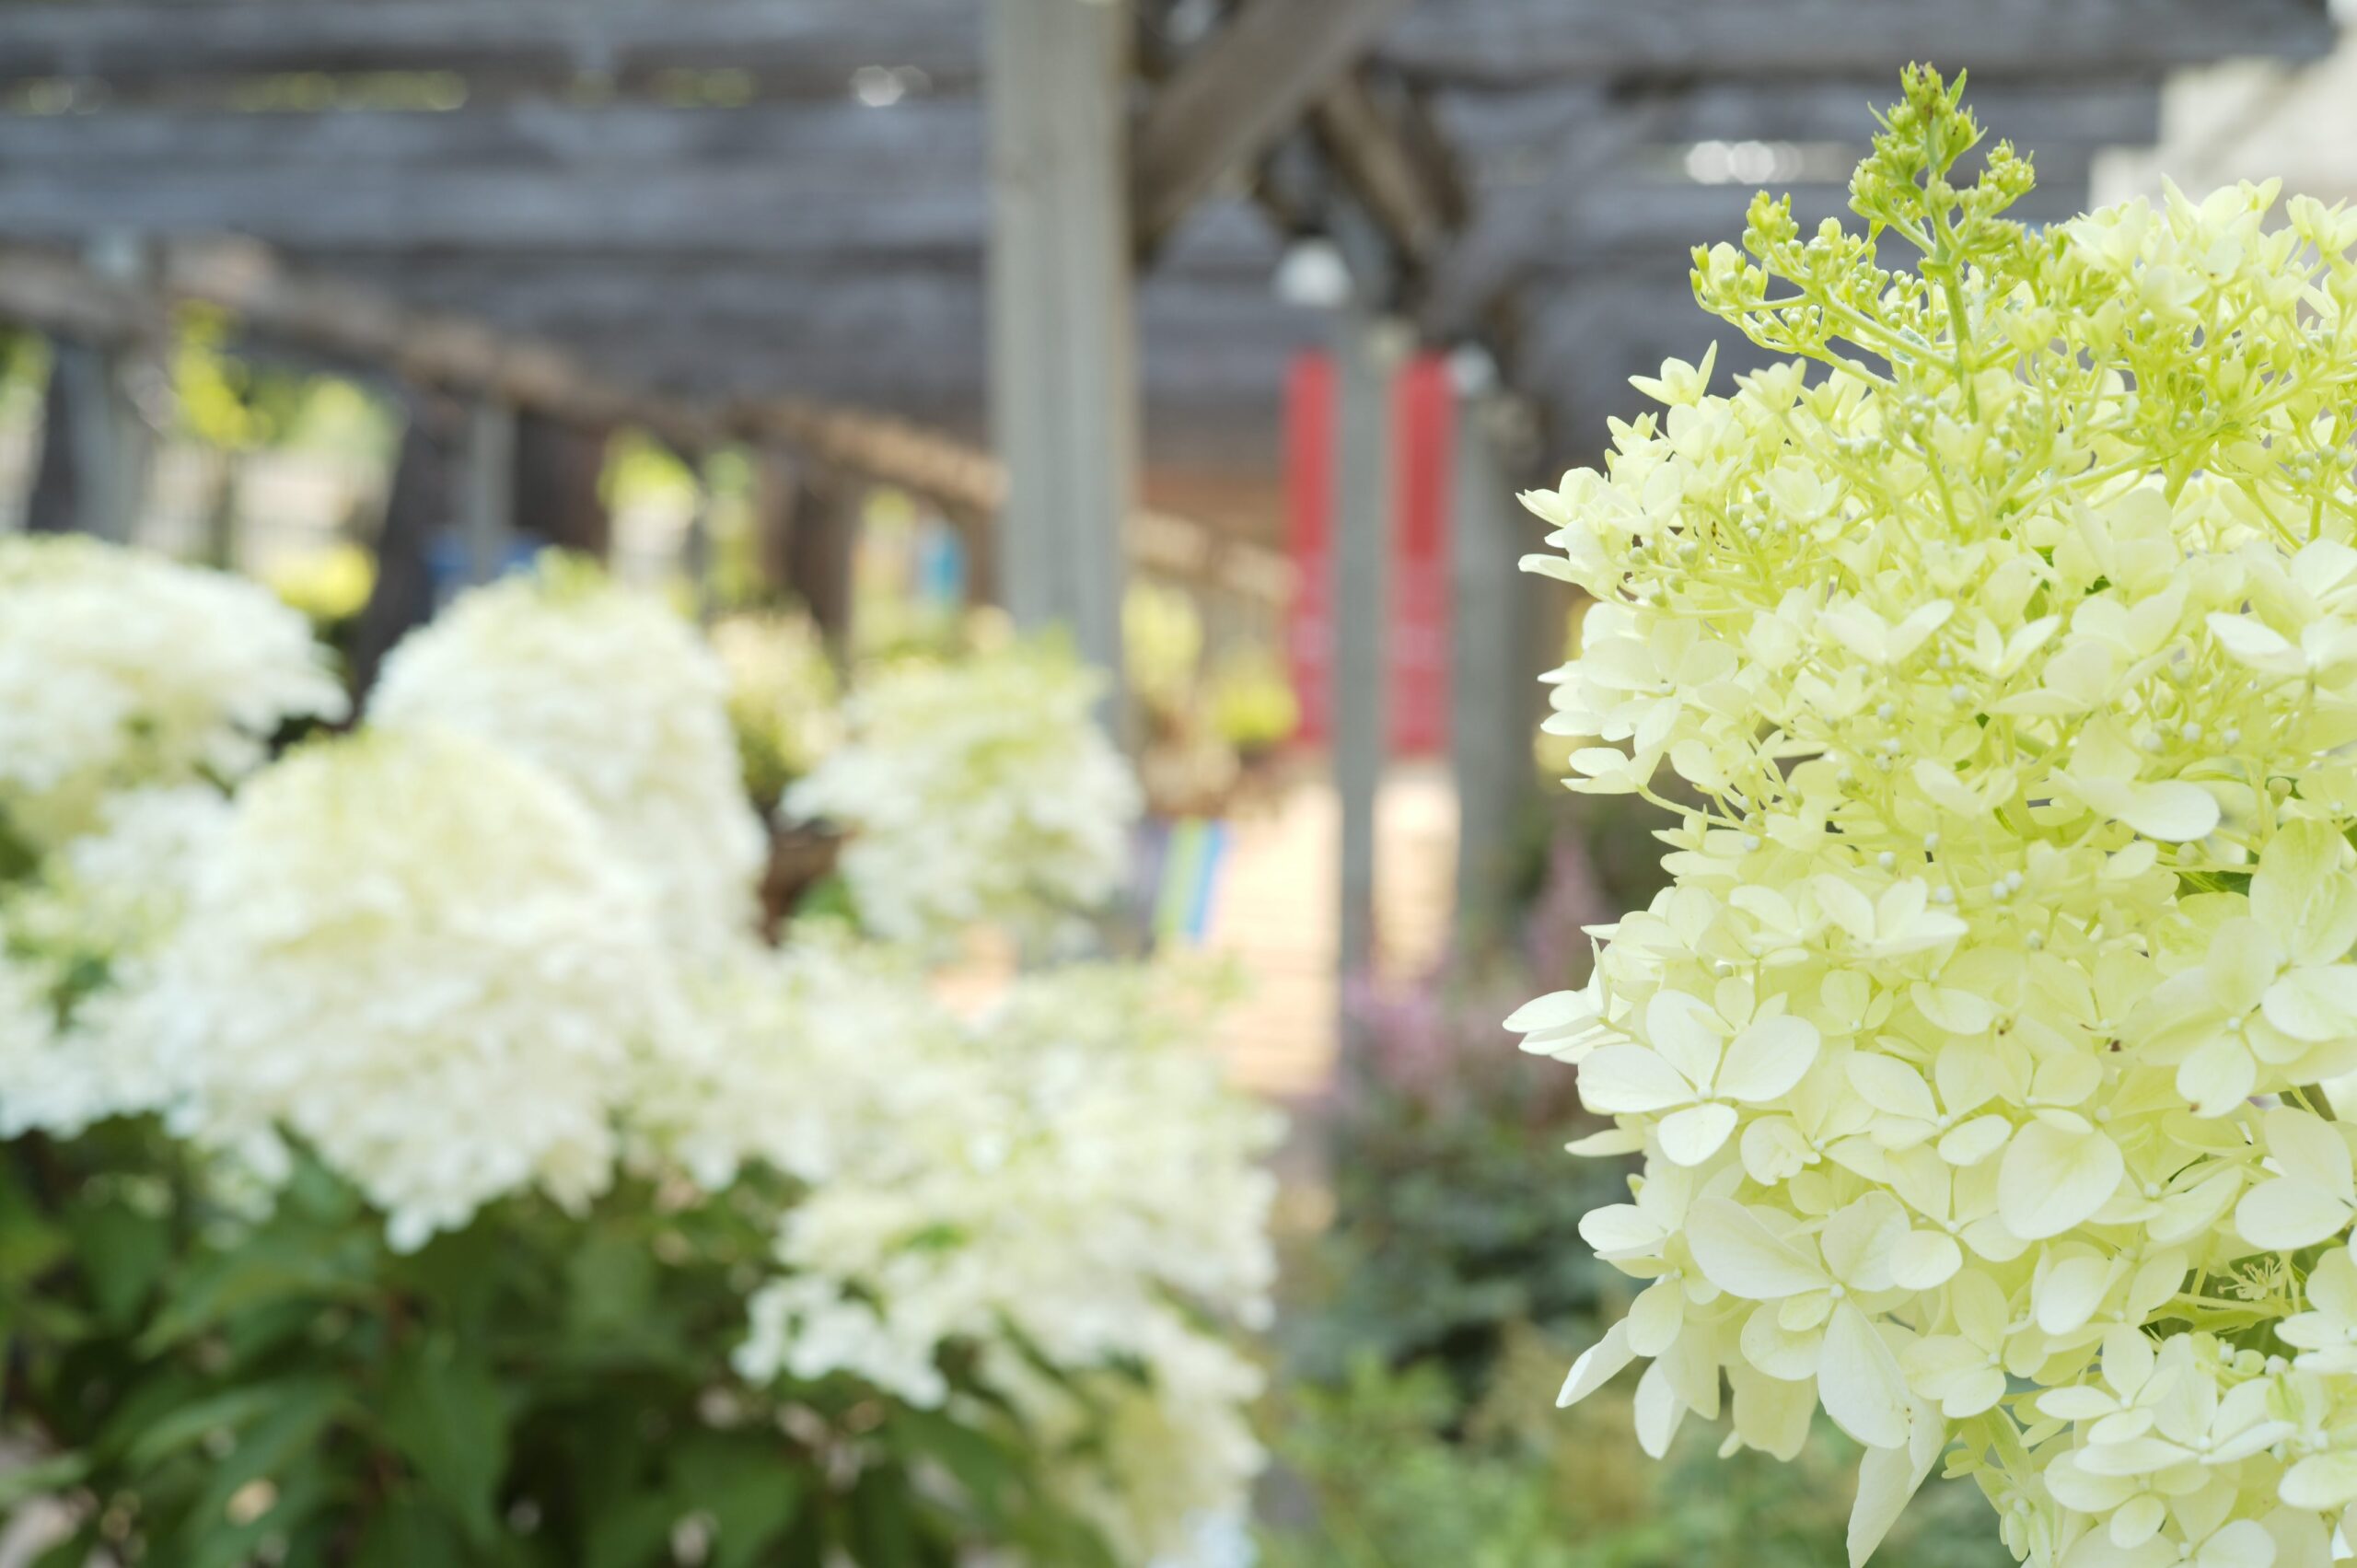 White hydrangeas in an outdoor gardening nursery
